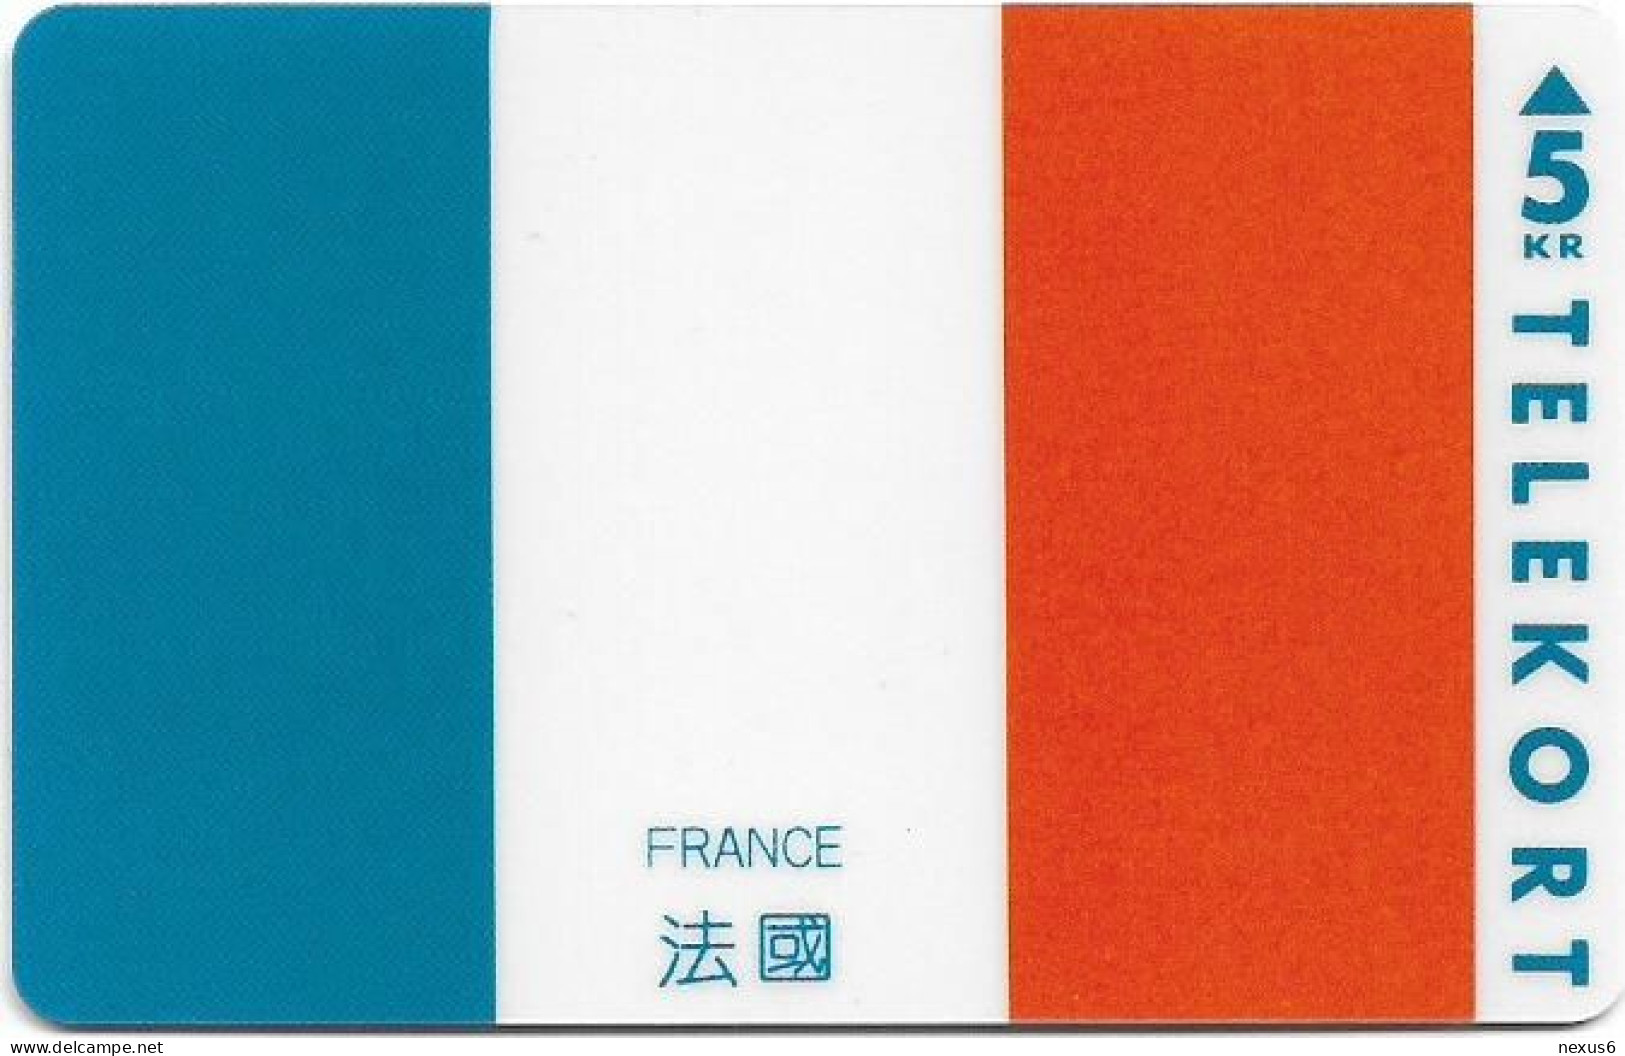 Denmark - KTAS - Flags - France - TDKP153 - 06.1995, 5kr, 1.500ex, Used - Denmark